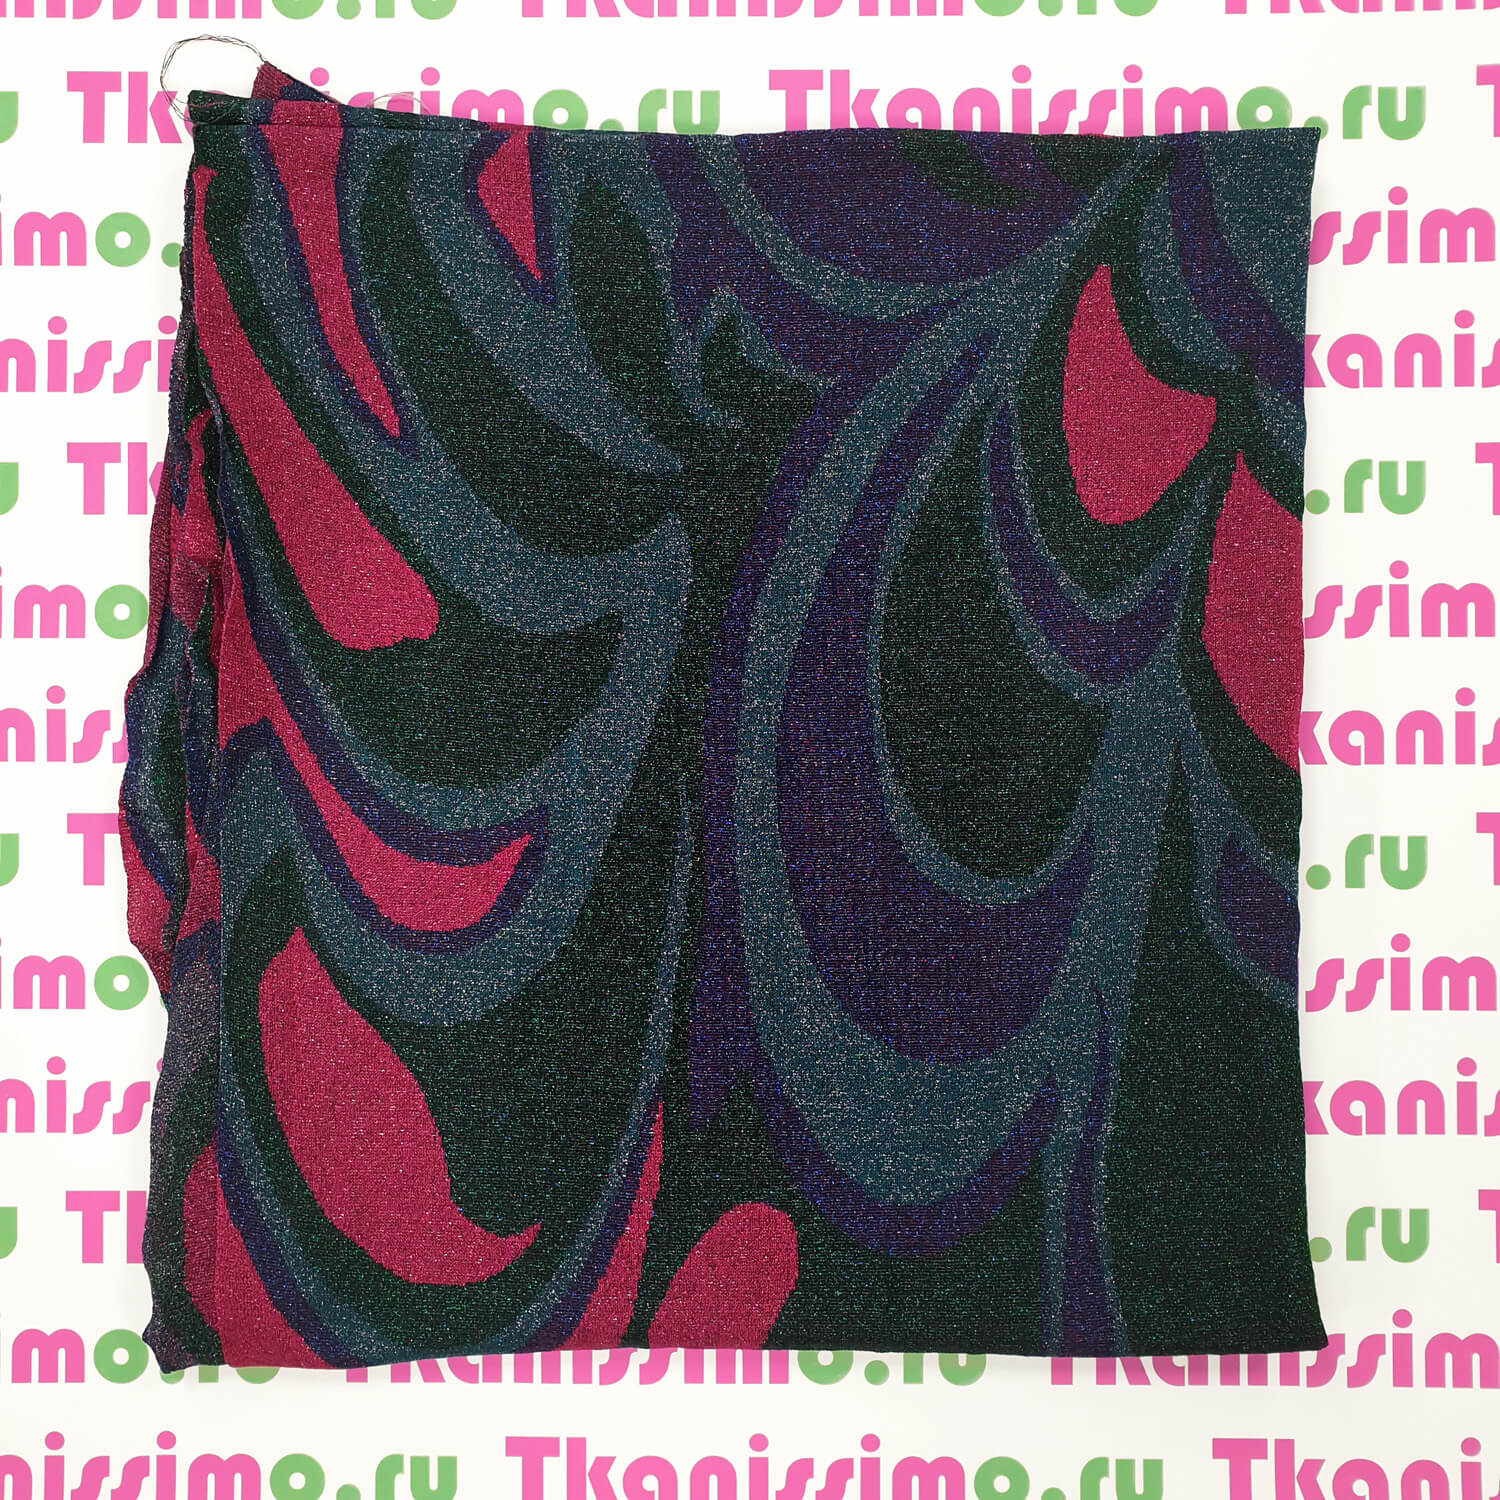 Трикотаж с люрексом Missoni, цвет Фиолетовый, фото 2